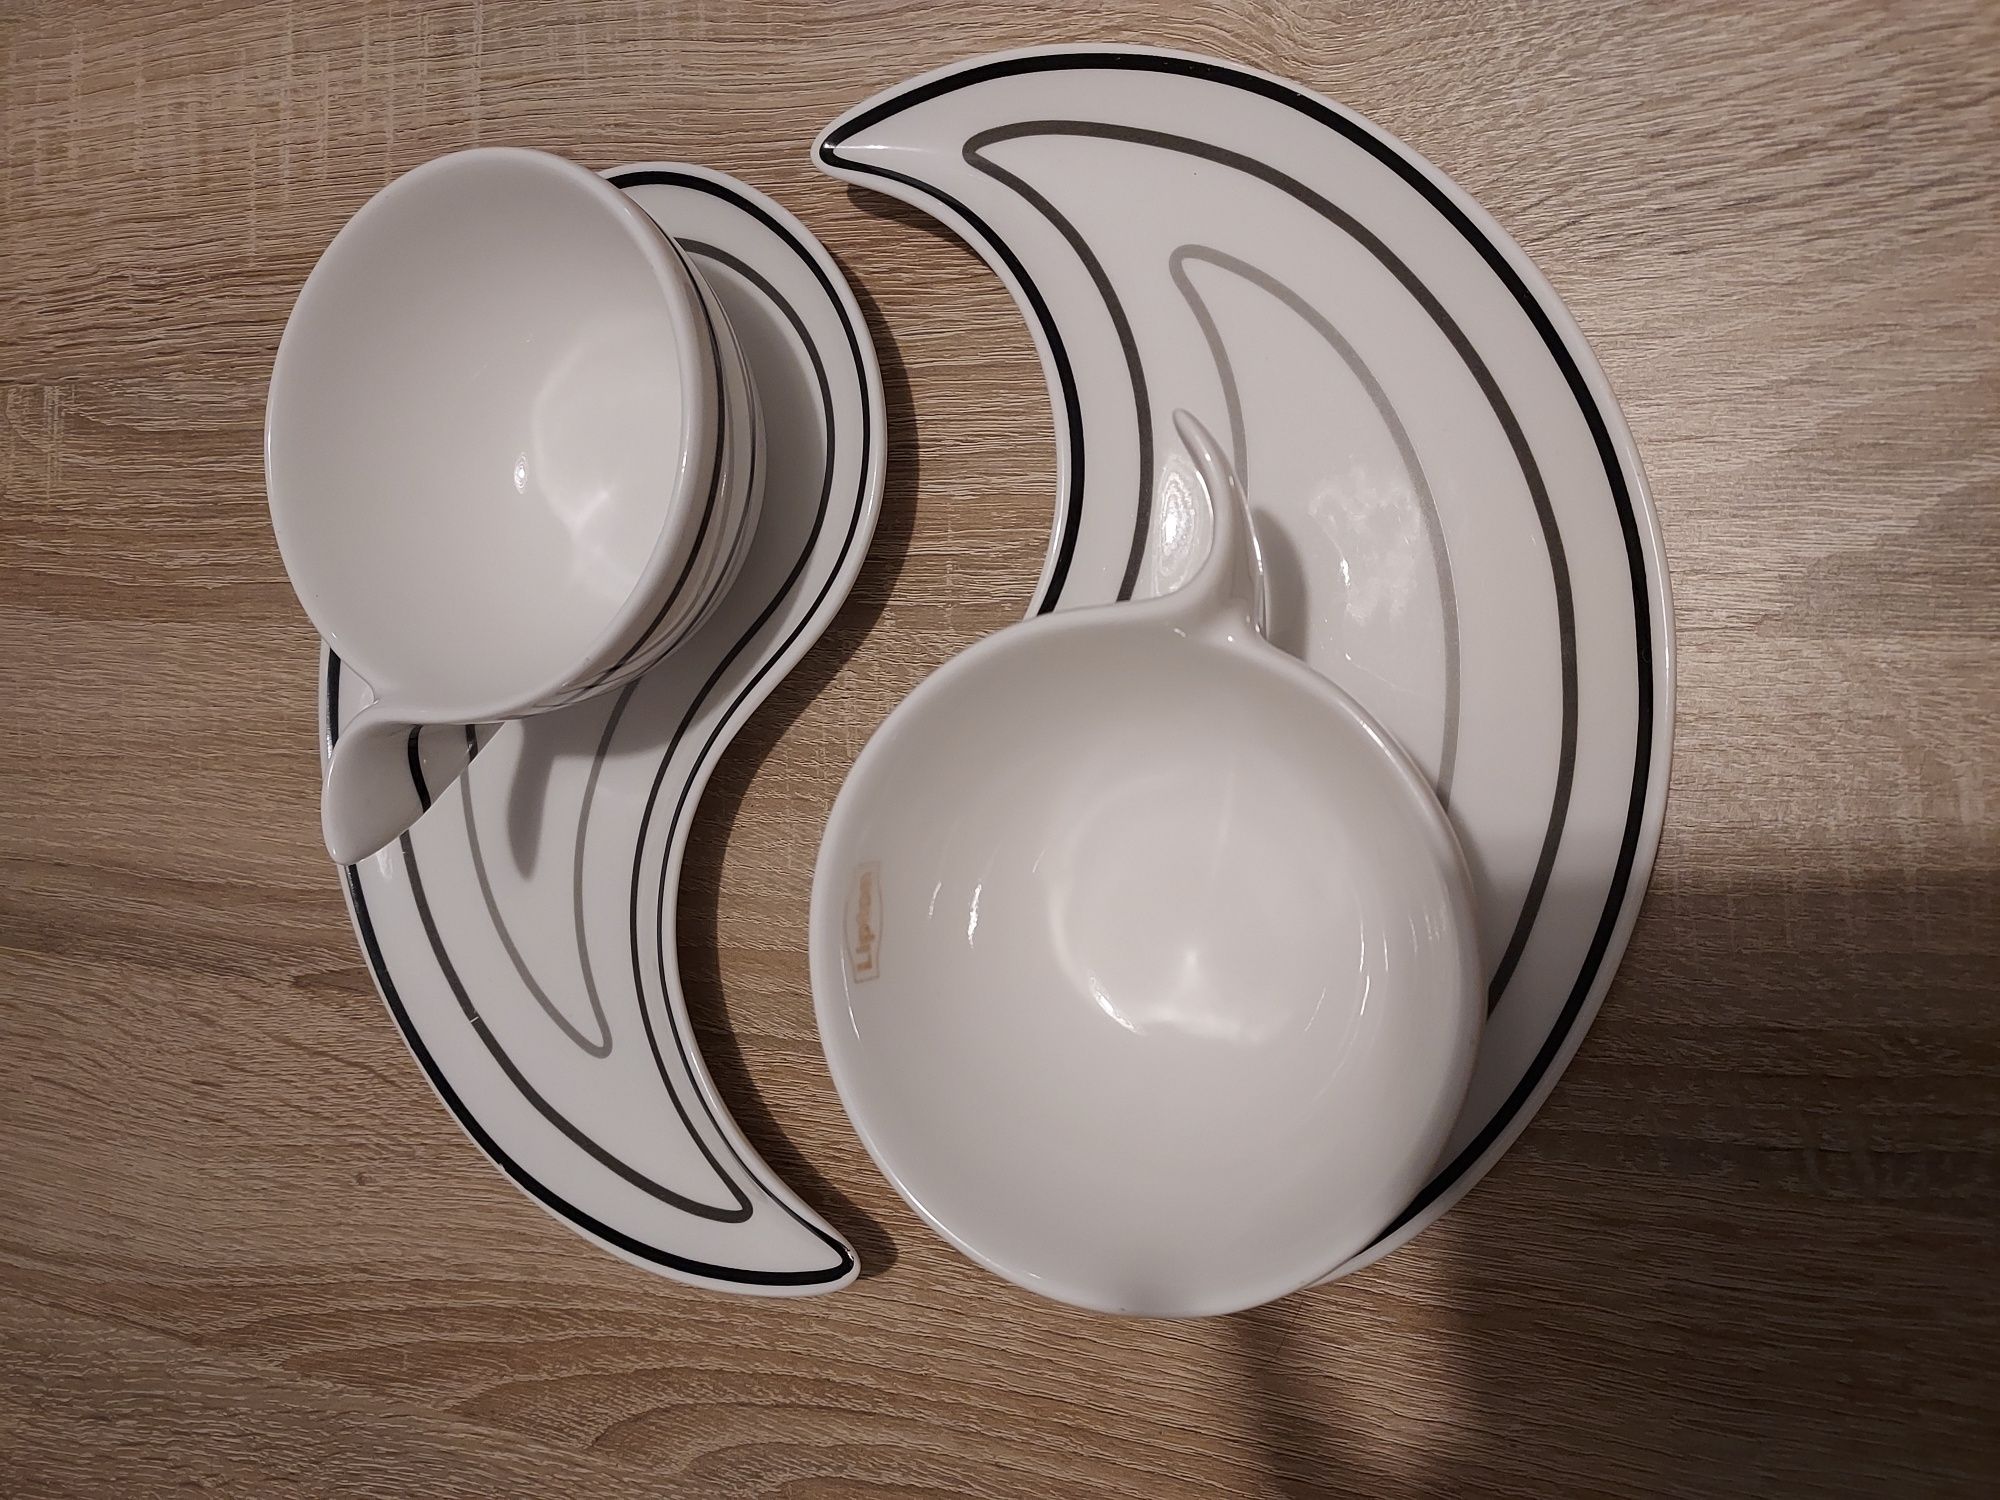 Filiżanki zestawy śniadaniowe mantra dla dwojga porcelana